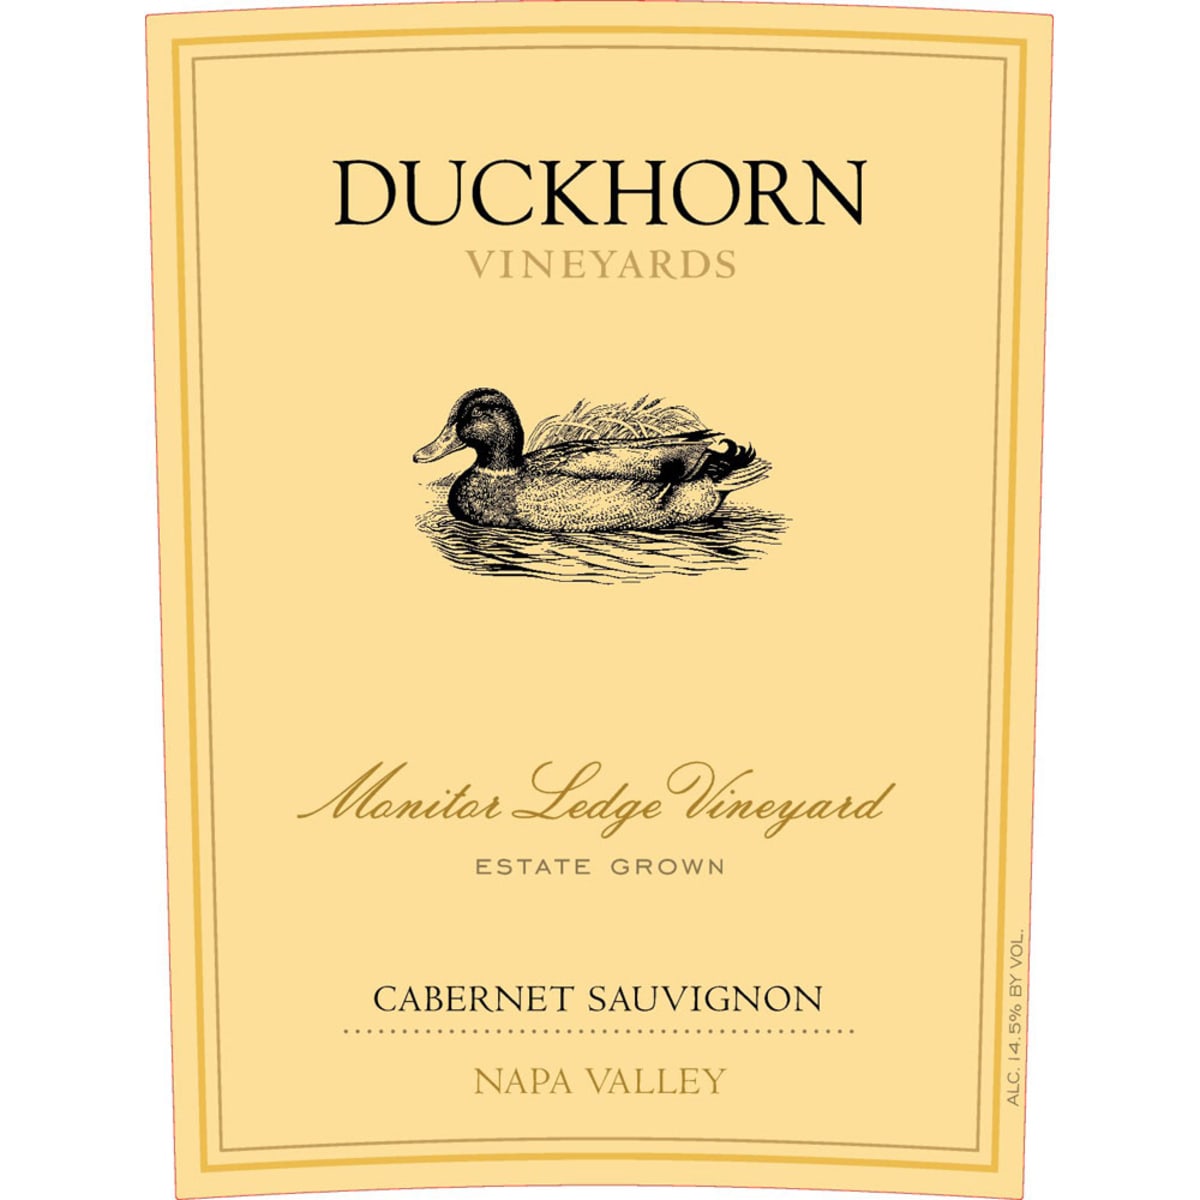 Duckhorn Monitor Ledge Vineyard Cabernet Sauvignon 2010 Front Label